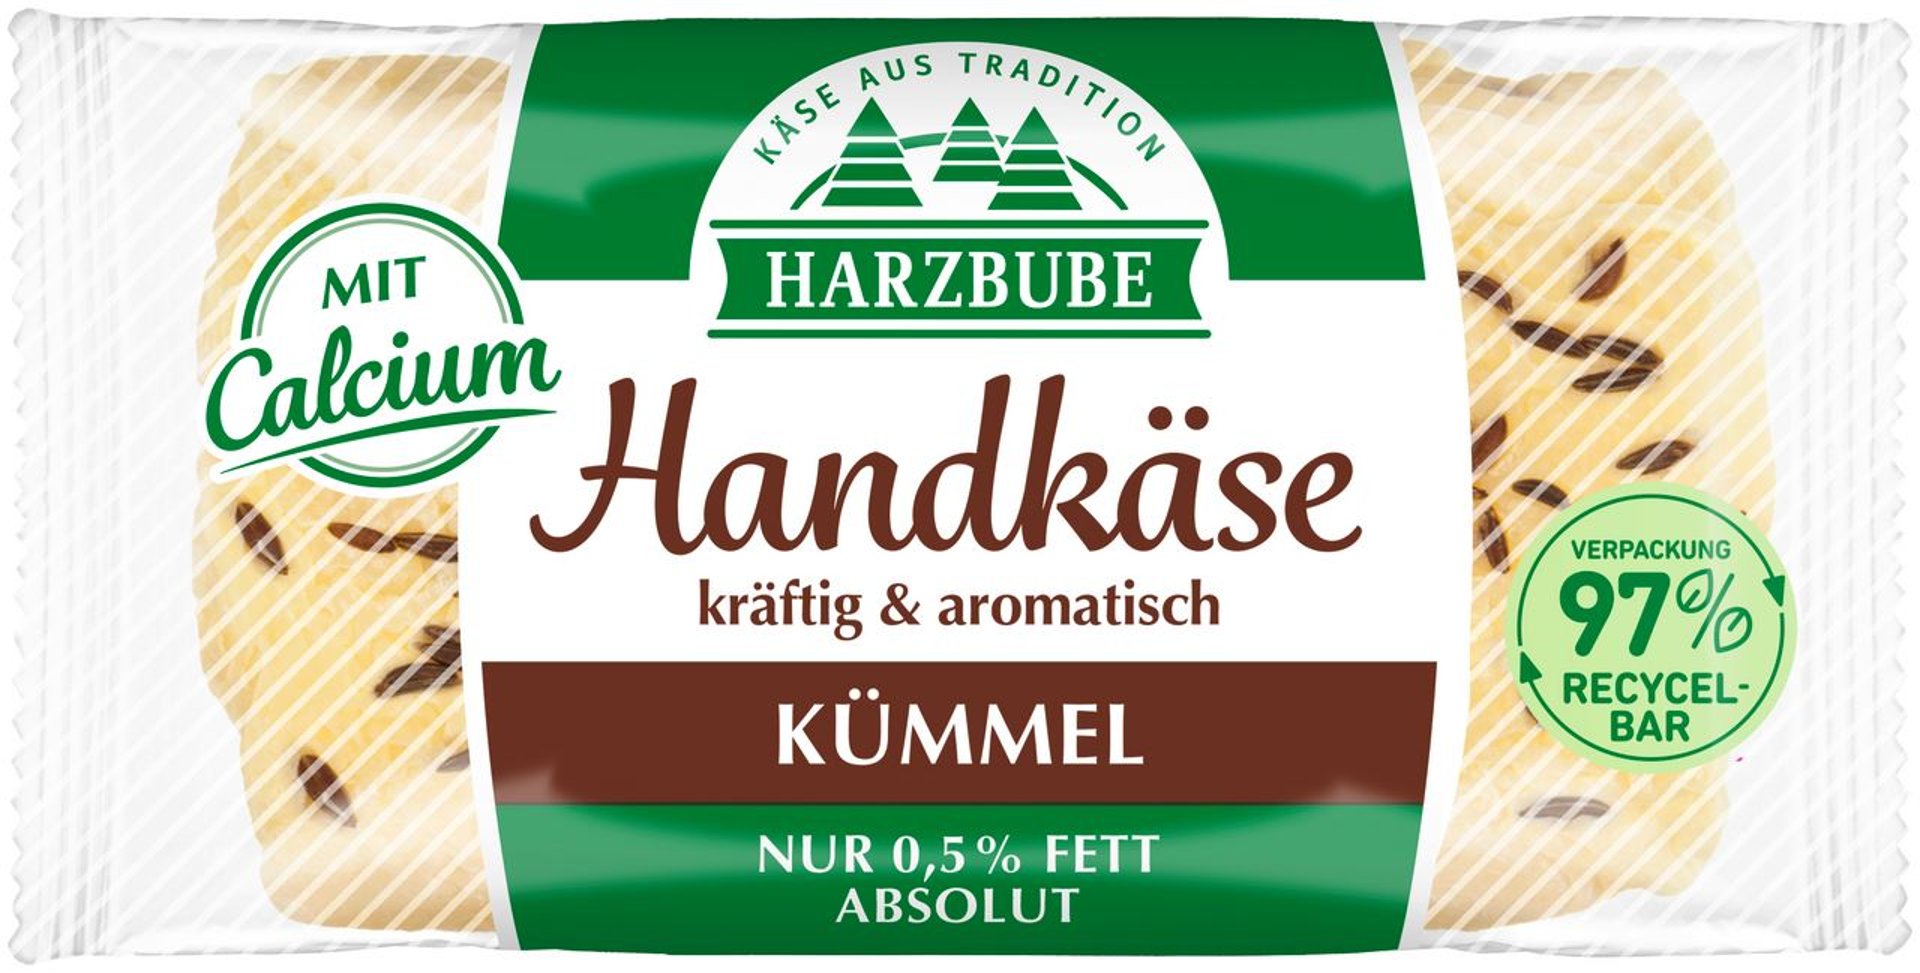 Harzbube - Handkäse mit Kümmel - 1 x 200 g Packung